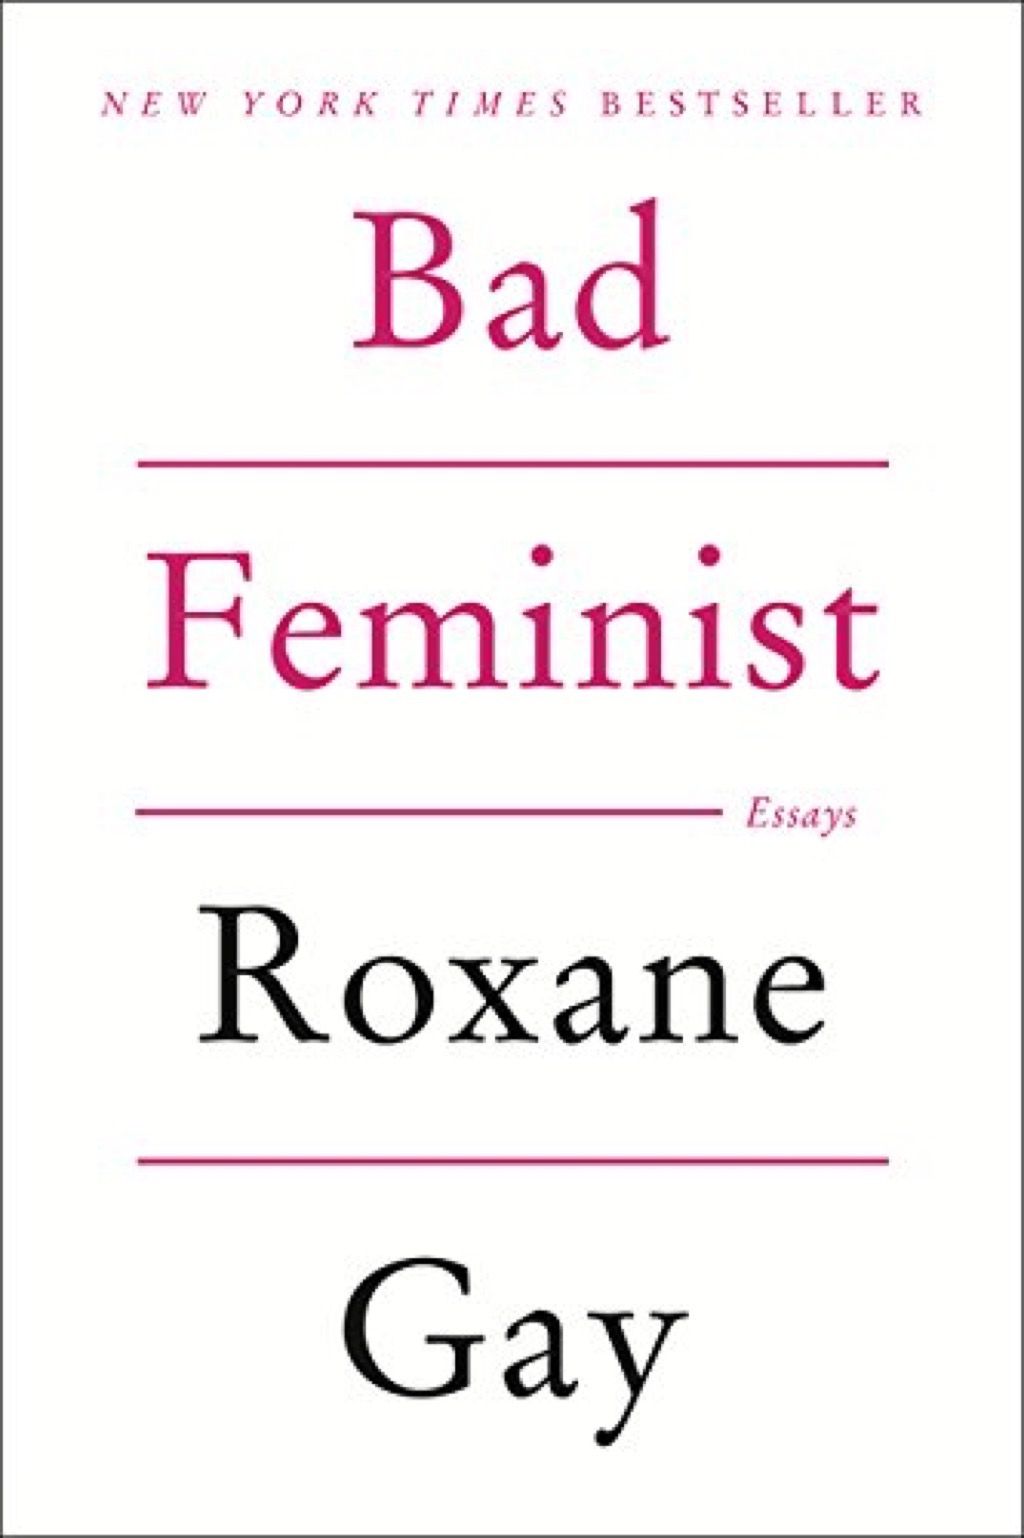 slabe feministične knjige, ki jih mora prebrati vsaka ženska v svojih 40-ih